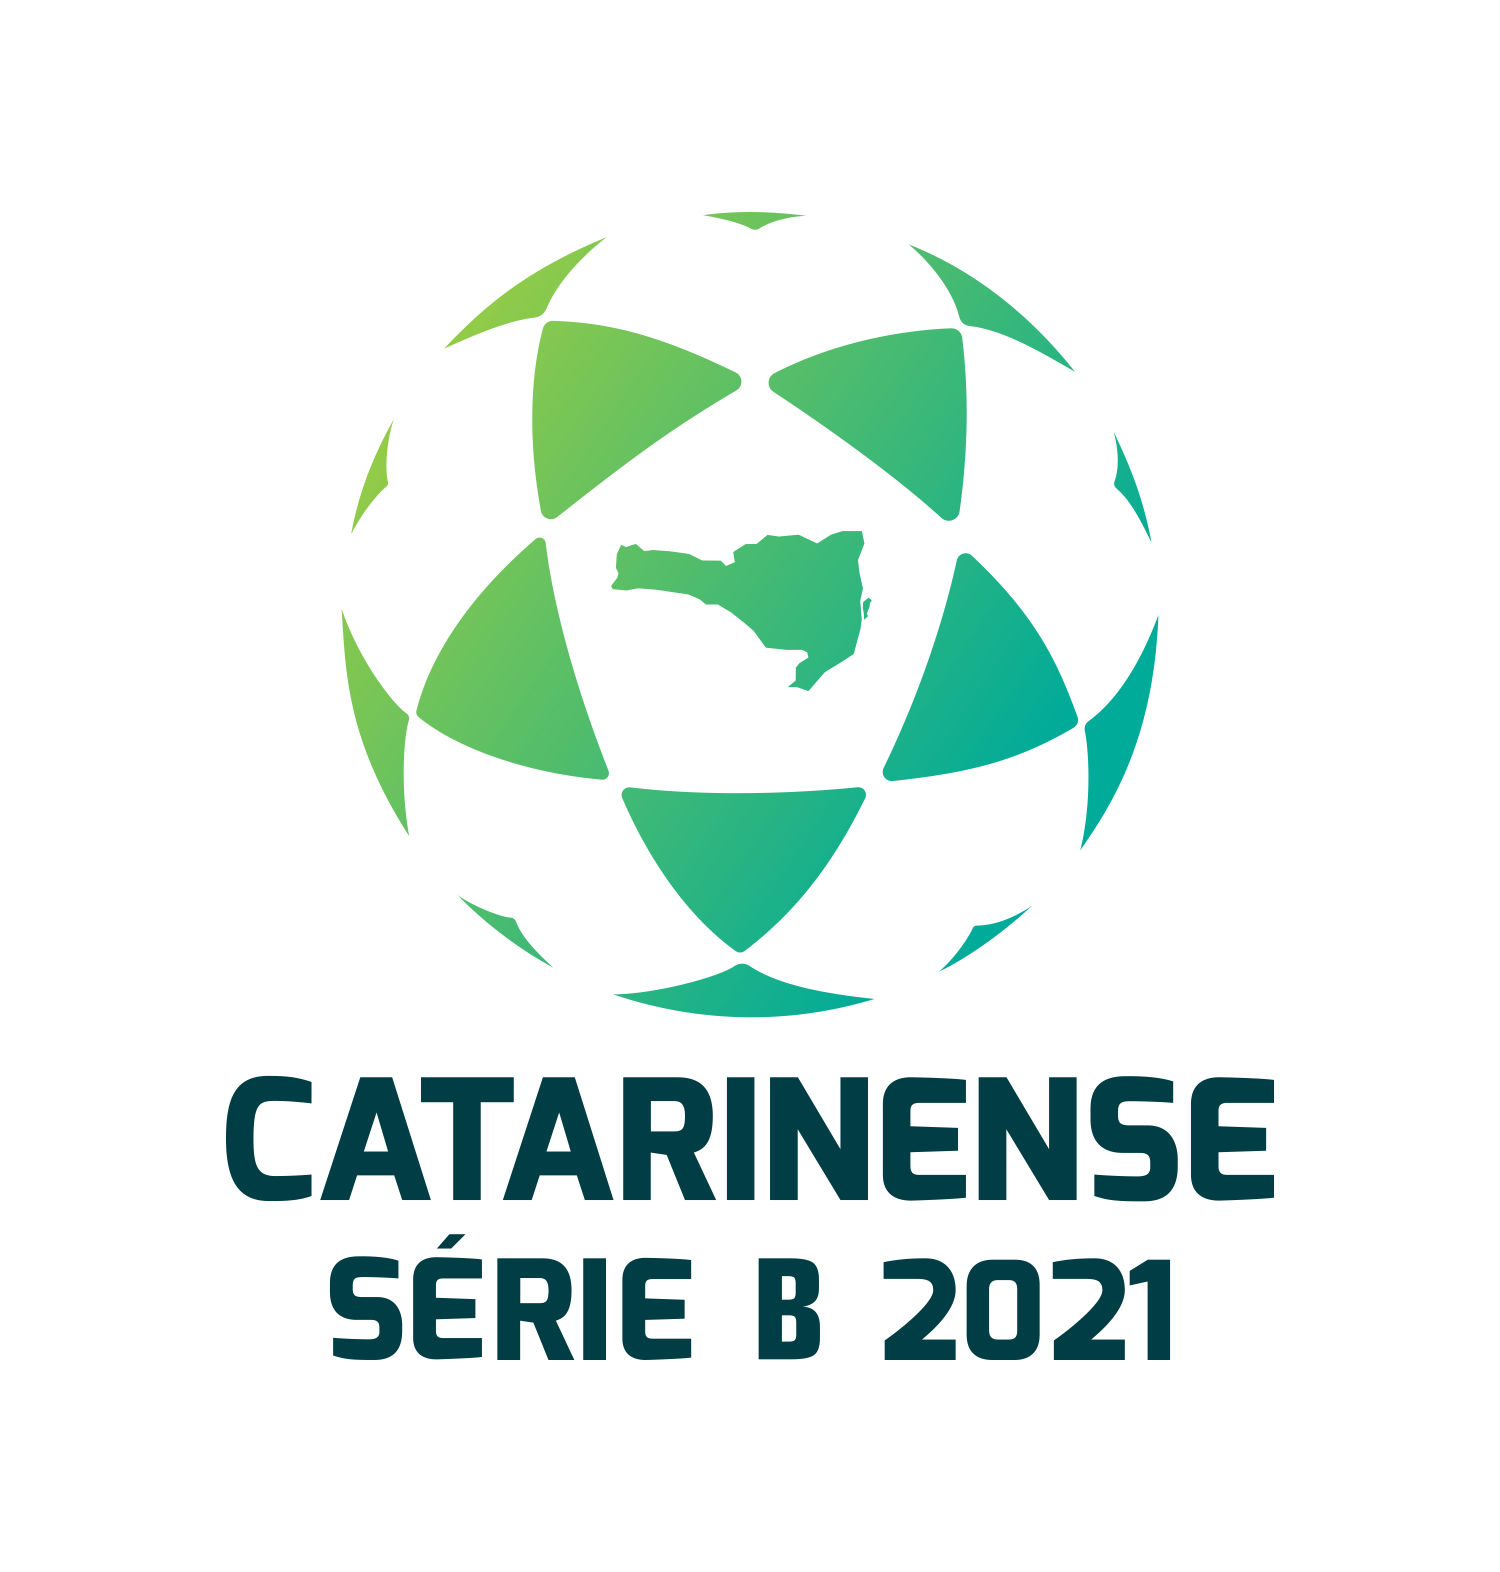 FCF lança o prêmio Melhores do Campeonato Catarinense da Série B